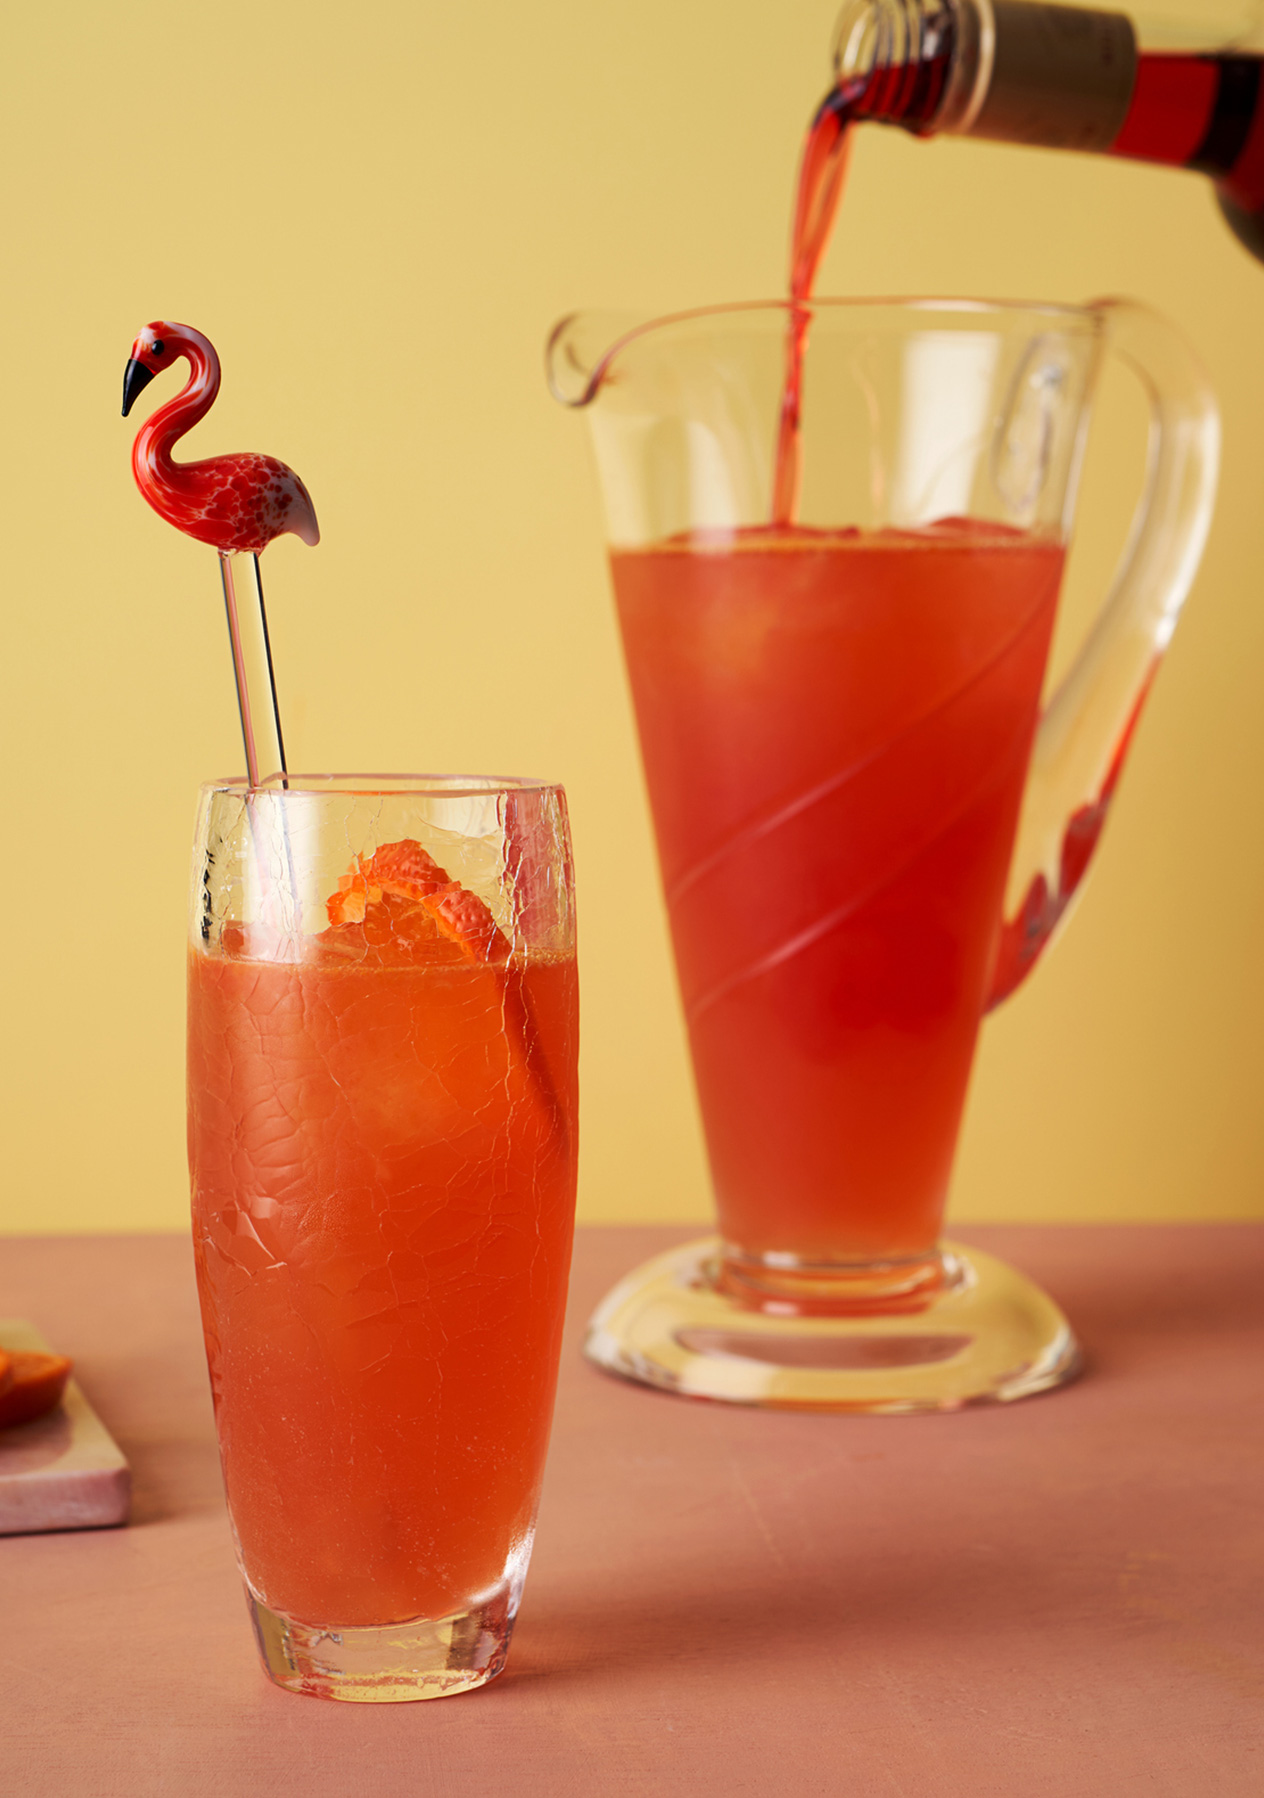 A glass of Clementine & Campari Flamingo